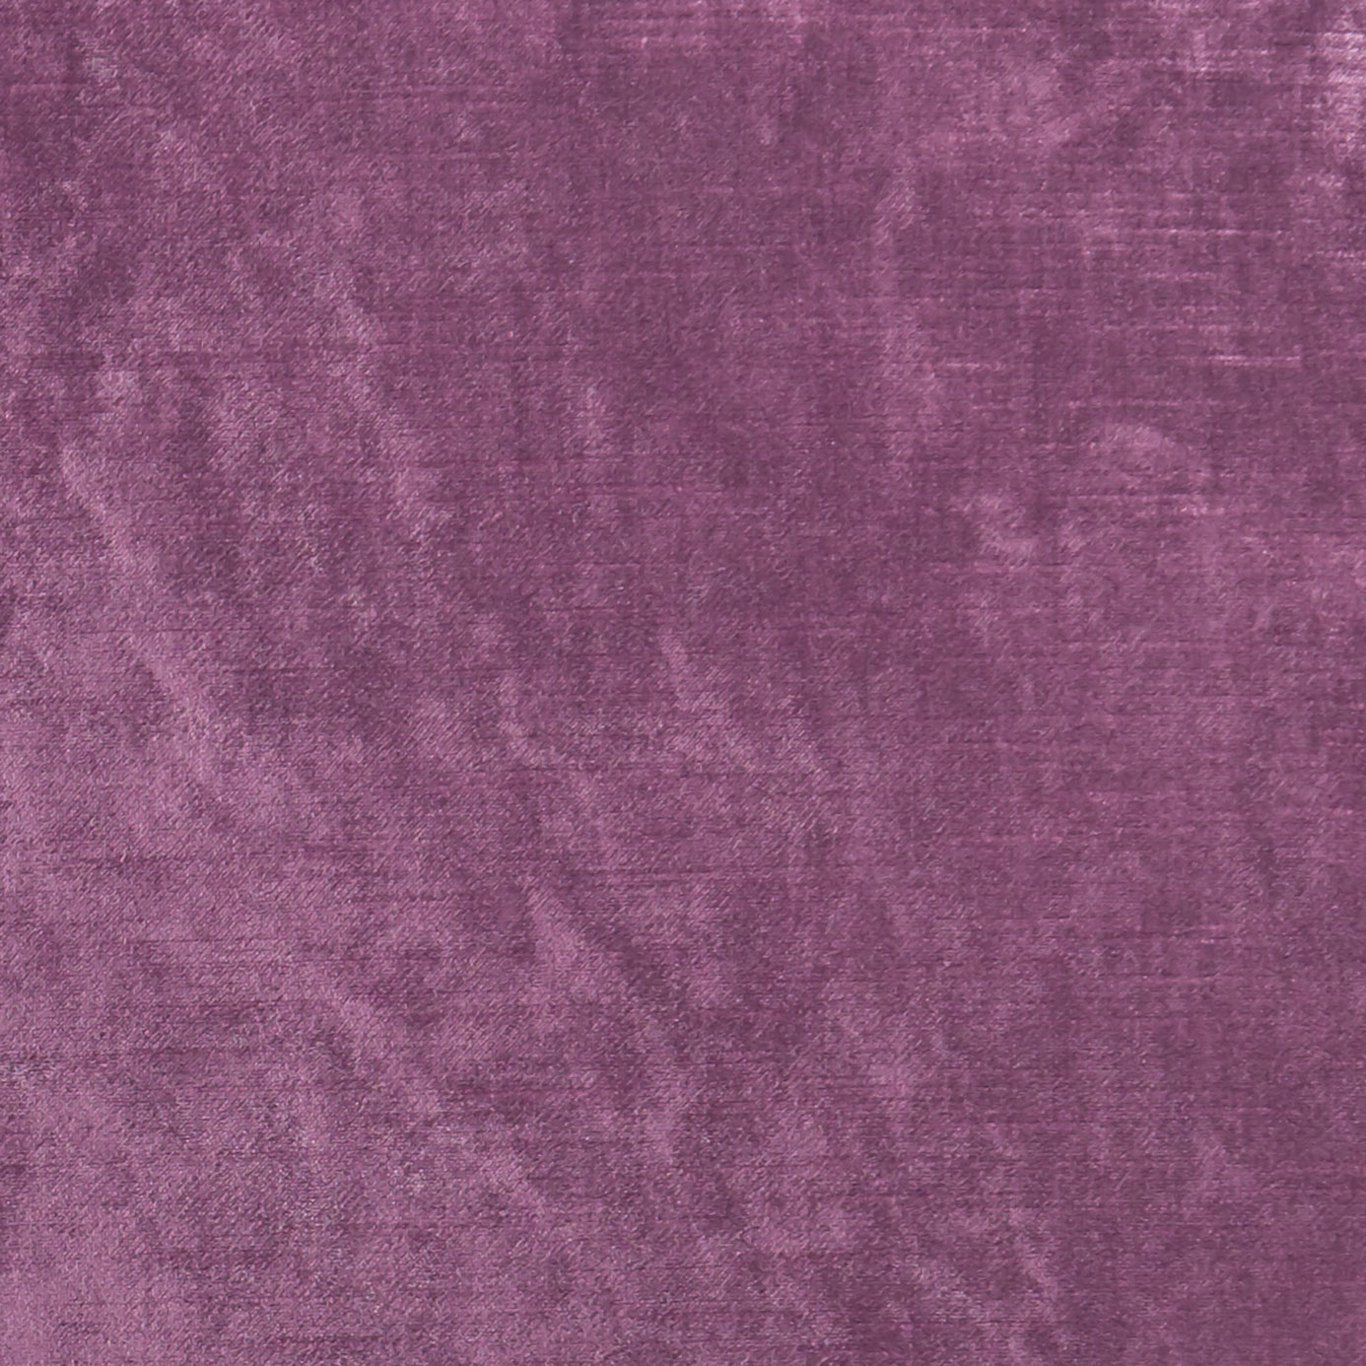 Allure Fabric by Clarke & Clarke - F1069/04 - Berry